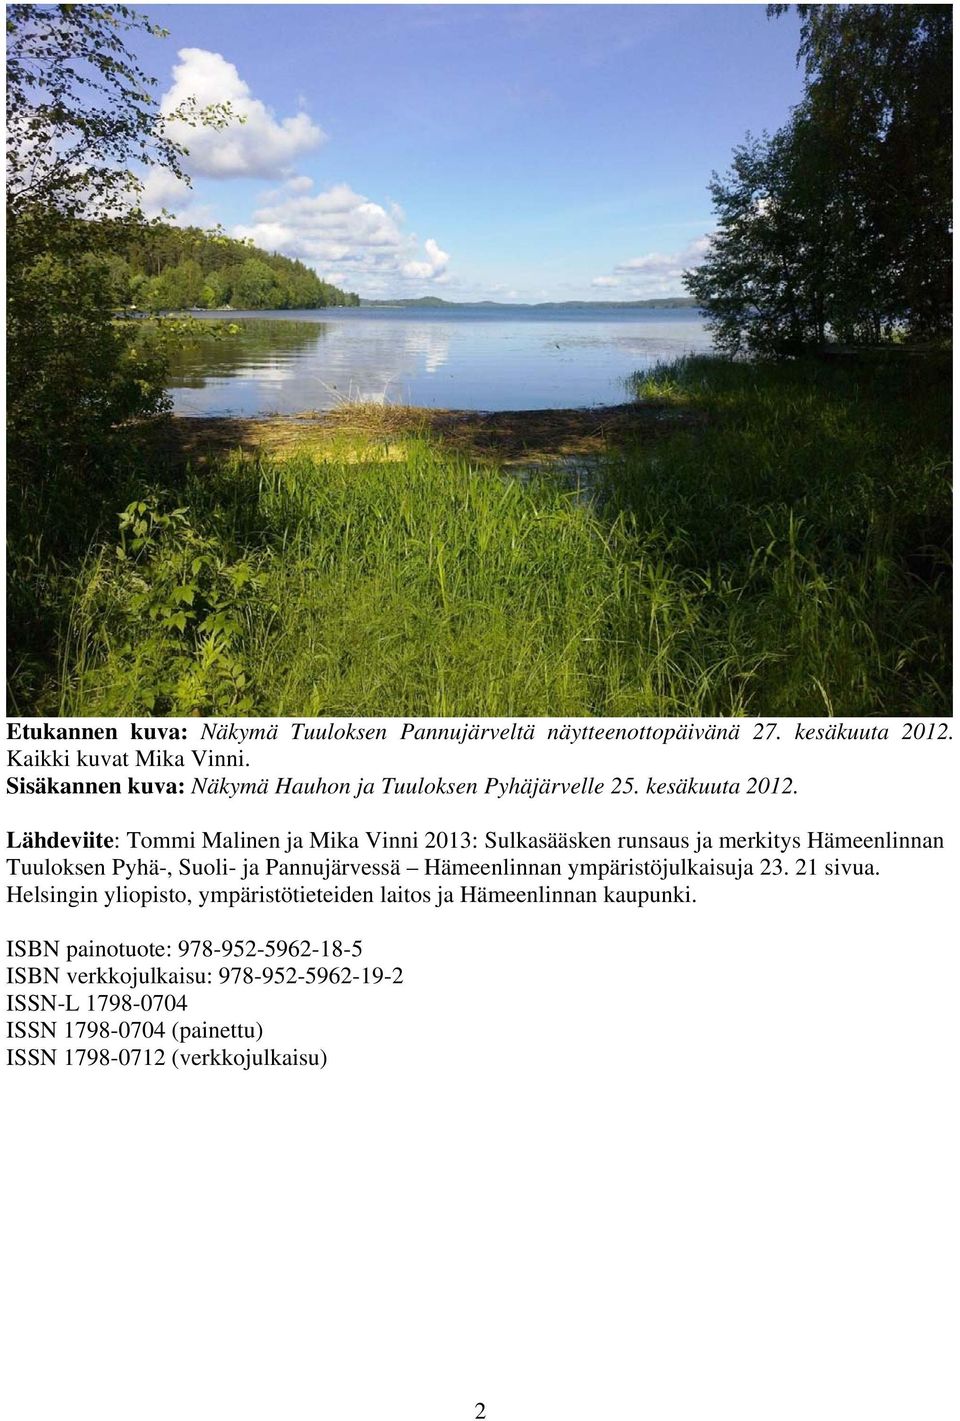 Lähdeviite: Tommi Malinen ja Mika Vinni 213: Sulkasääsken runsaus ja merkitys Hämeenlinnan Tuuloksen Pyhä-, Suoli- ja Pannujärvessä Hämeenlinnan